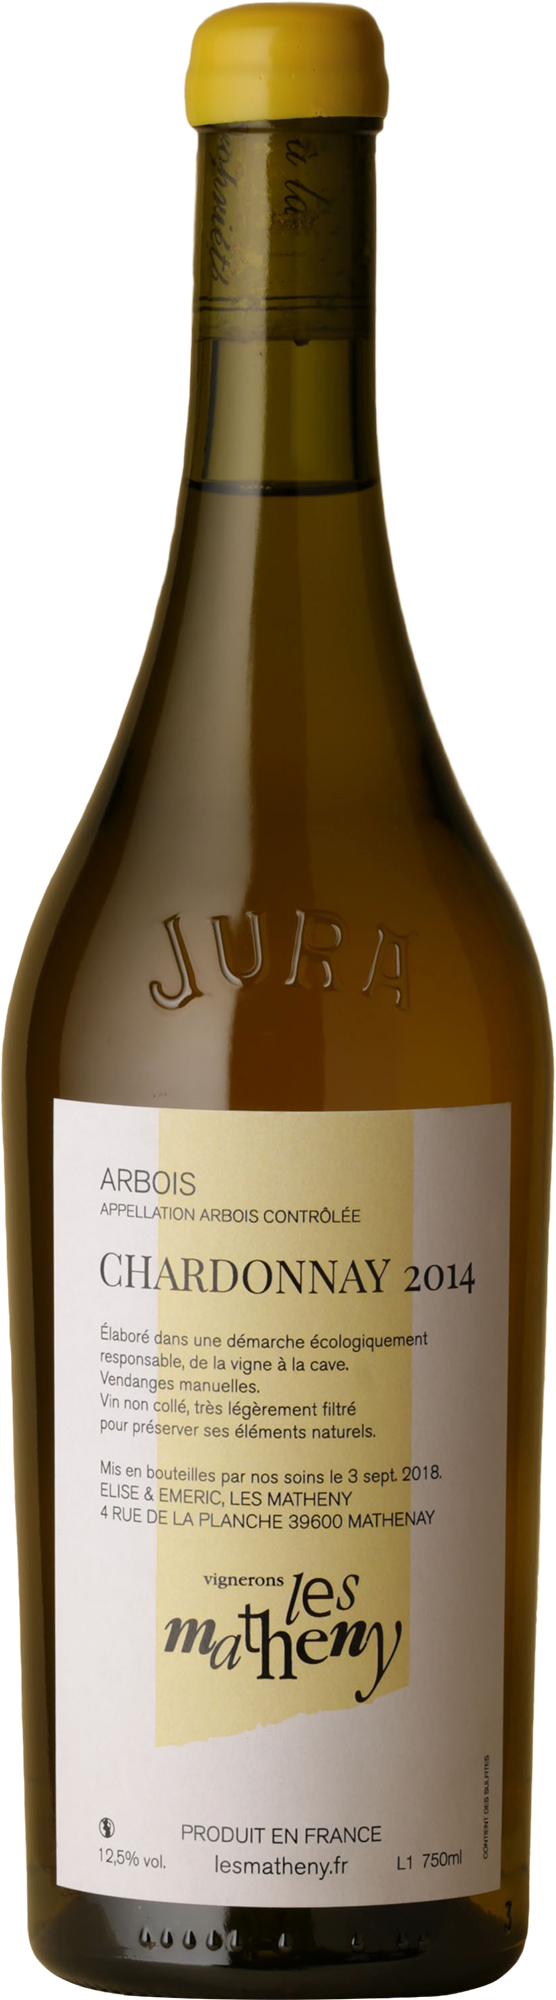 Les Matheny - Cotes Du Jura Chardonnay 2014 White Wine